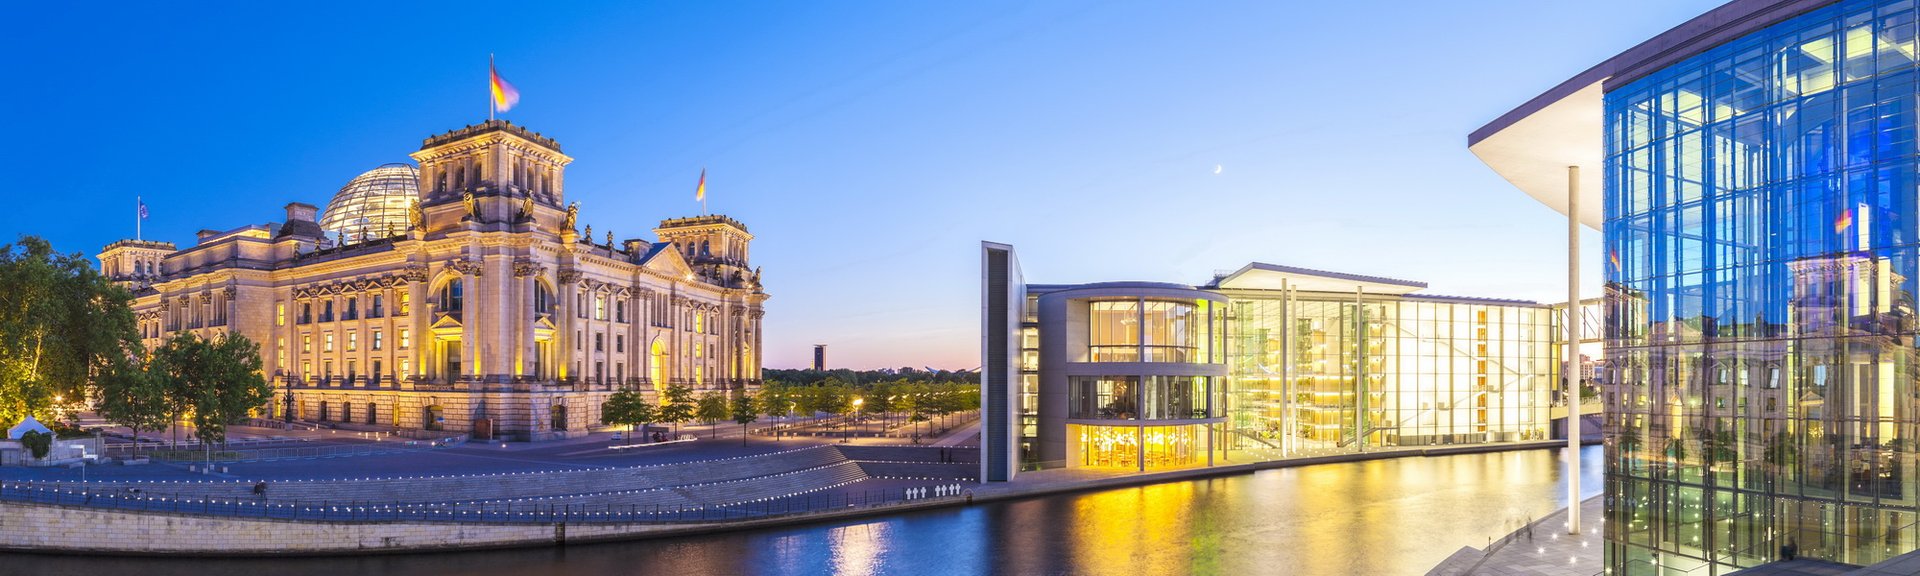 Berlijn in detail – Berlijn-Mitte in een oogopslag